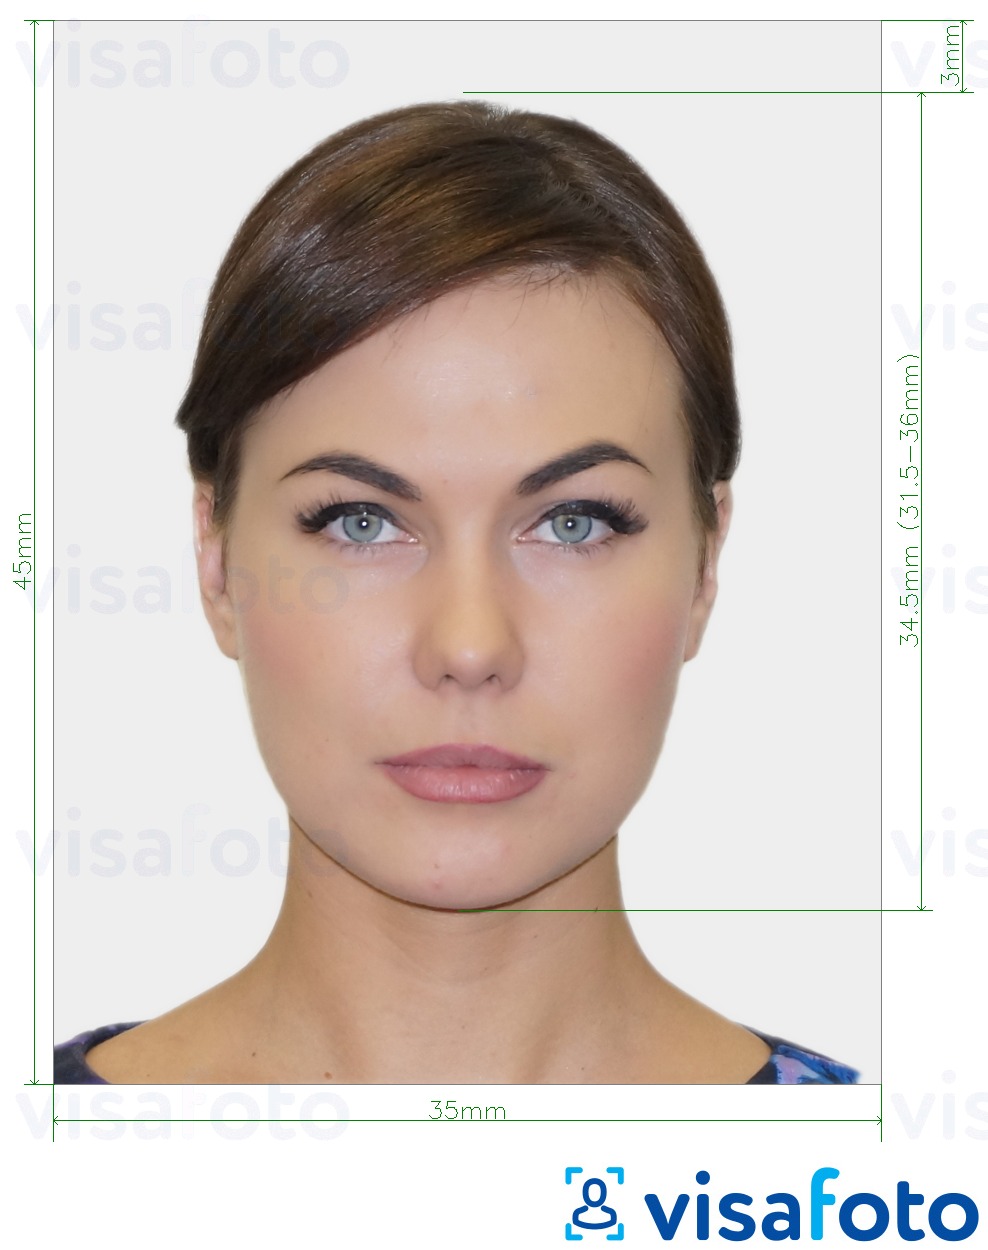 Primjer fotografije za Austrijska osobna iskaznica 35x45 mm (3,5x4,5 cm) s točno određenom veličinom